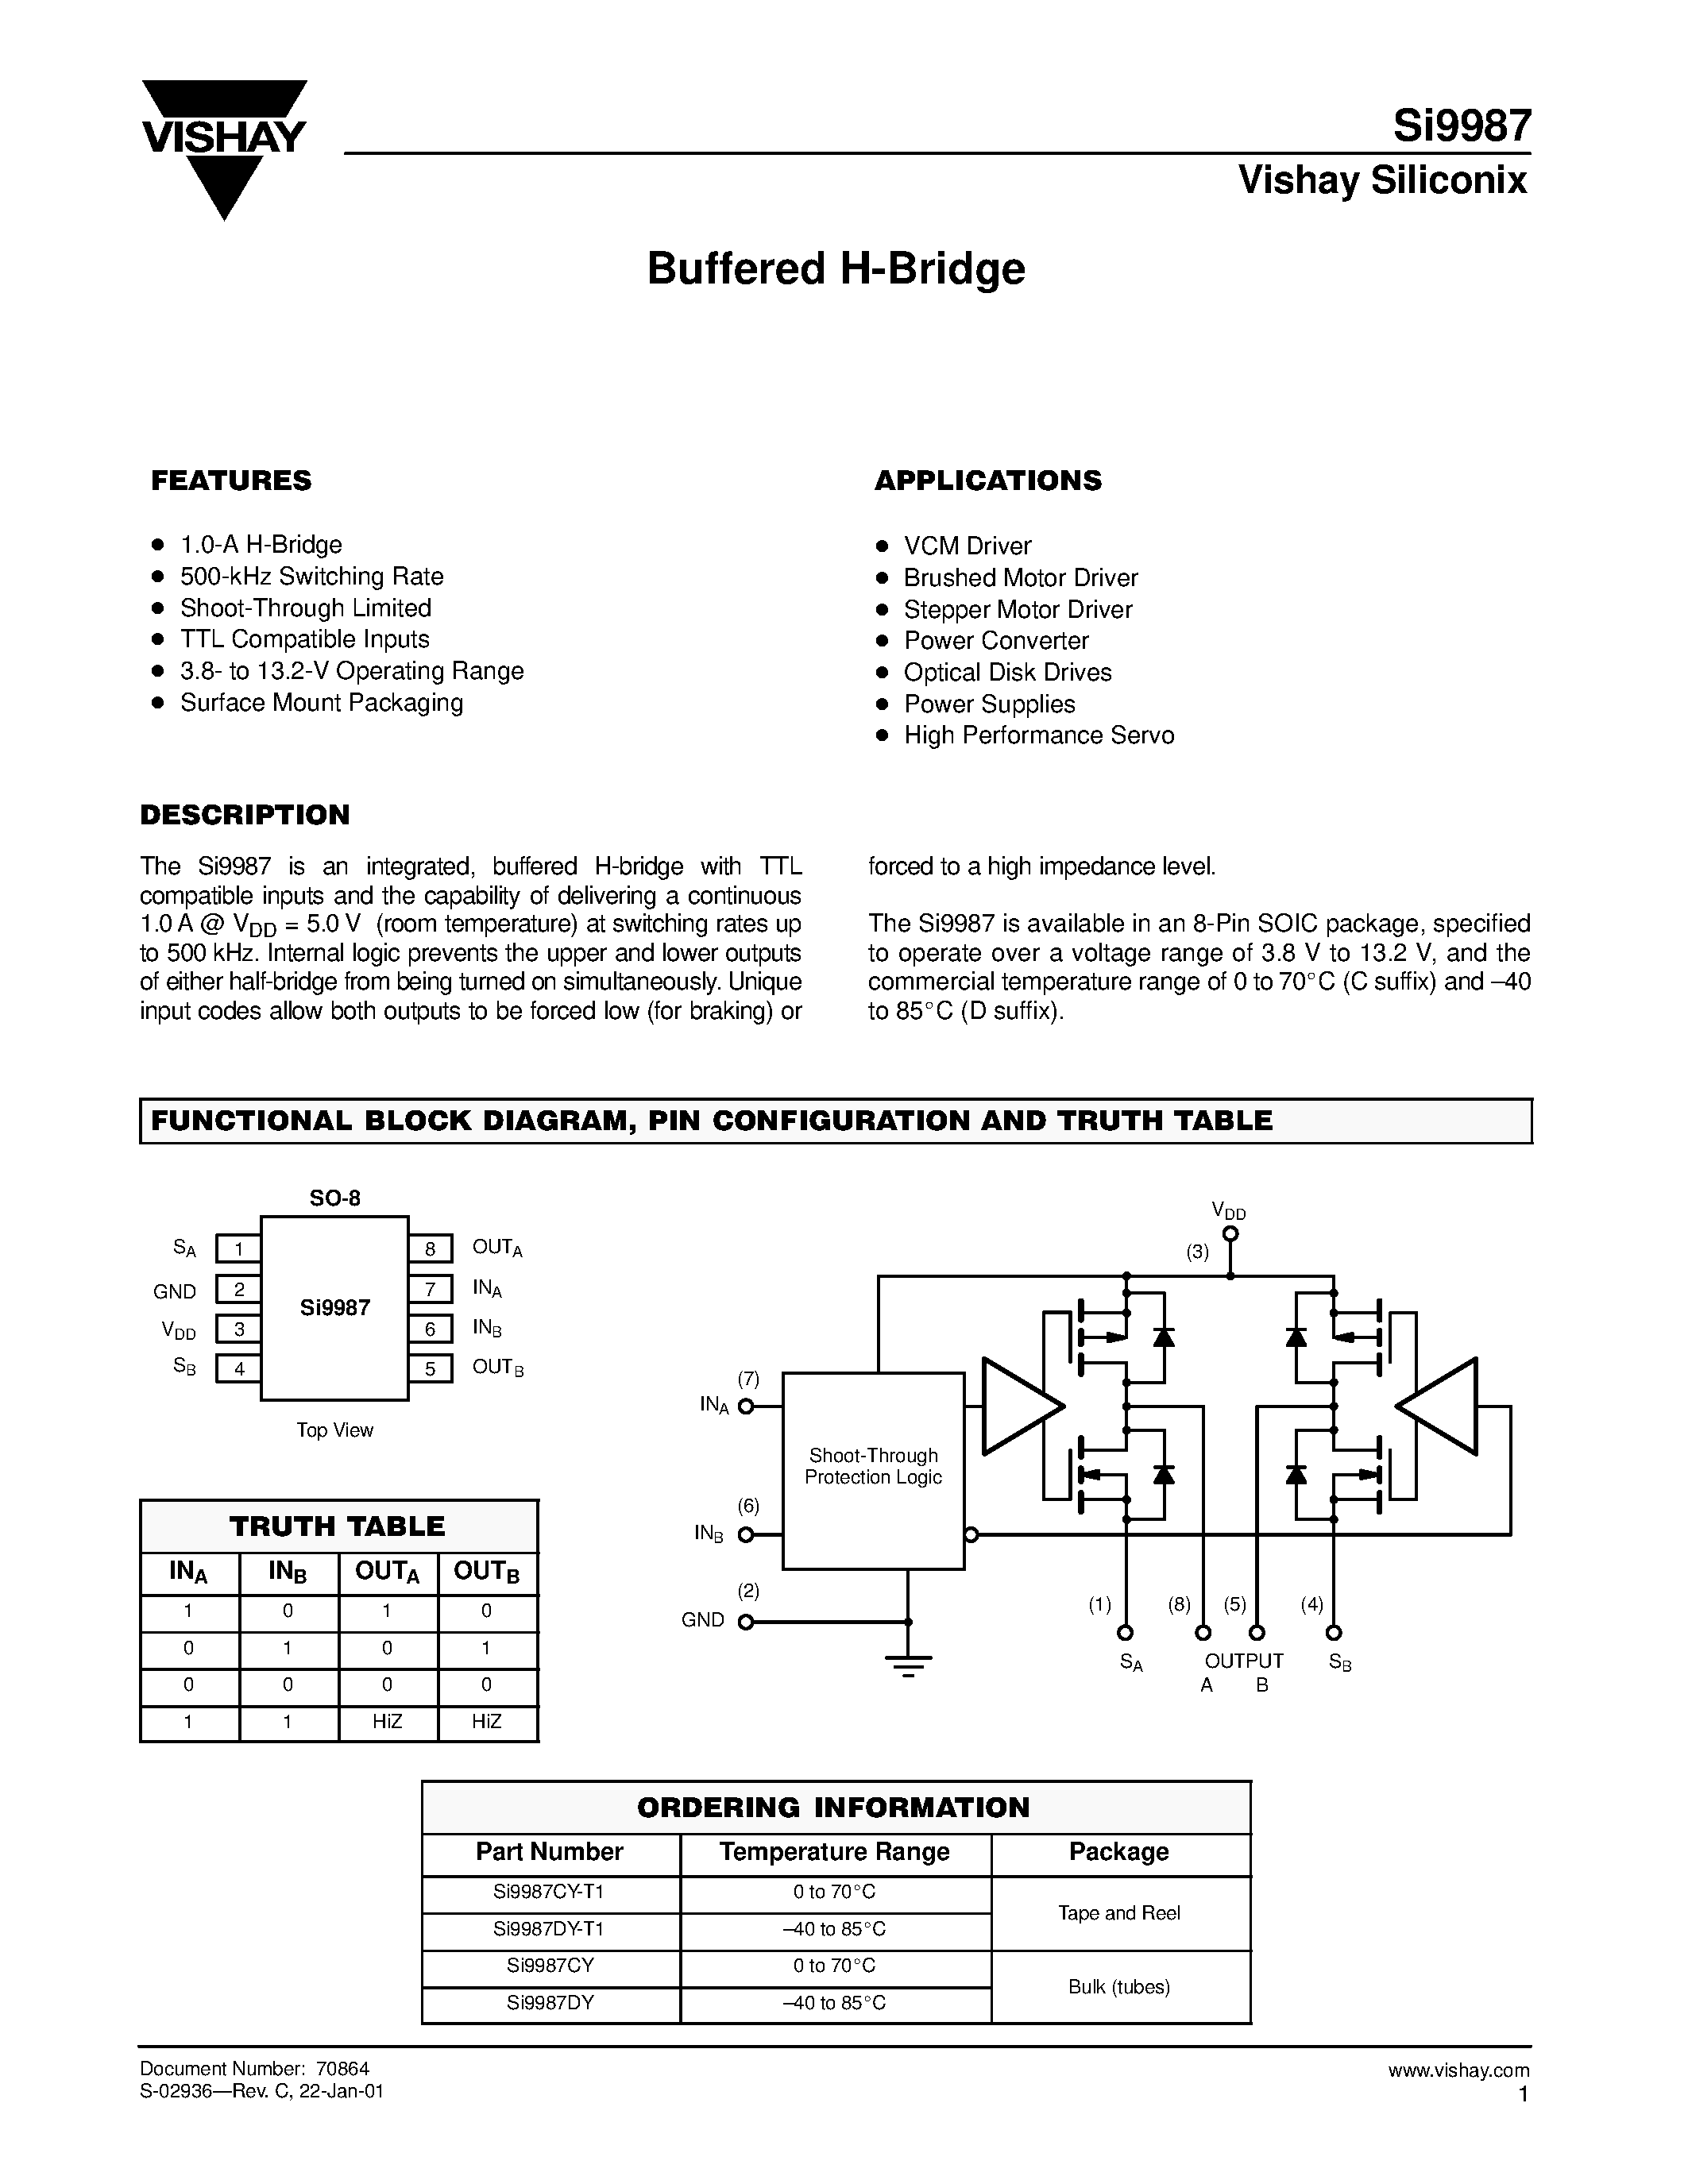 Datasheet Si9987DY-T1 - Buffered H-Bridge page 1